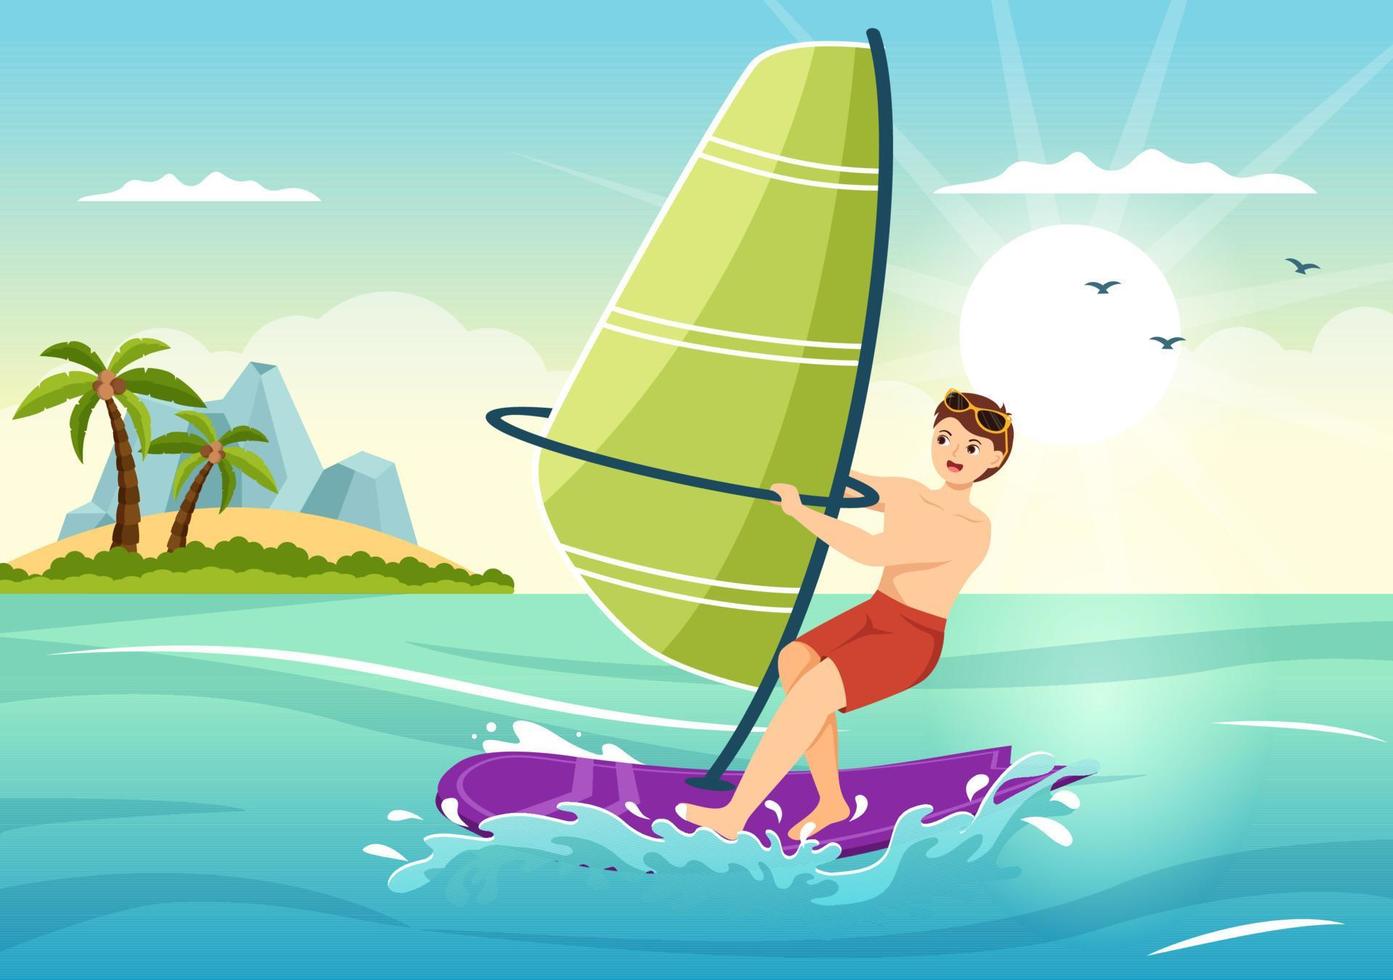 windsurf con la persona de pie en el velero y sosteniendo la vela en deportes acuáticos extremos ilustración de plantillas dibujadas a mano de dibujos animados planos vector